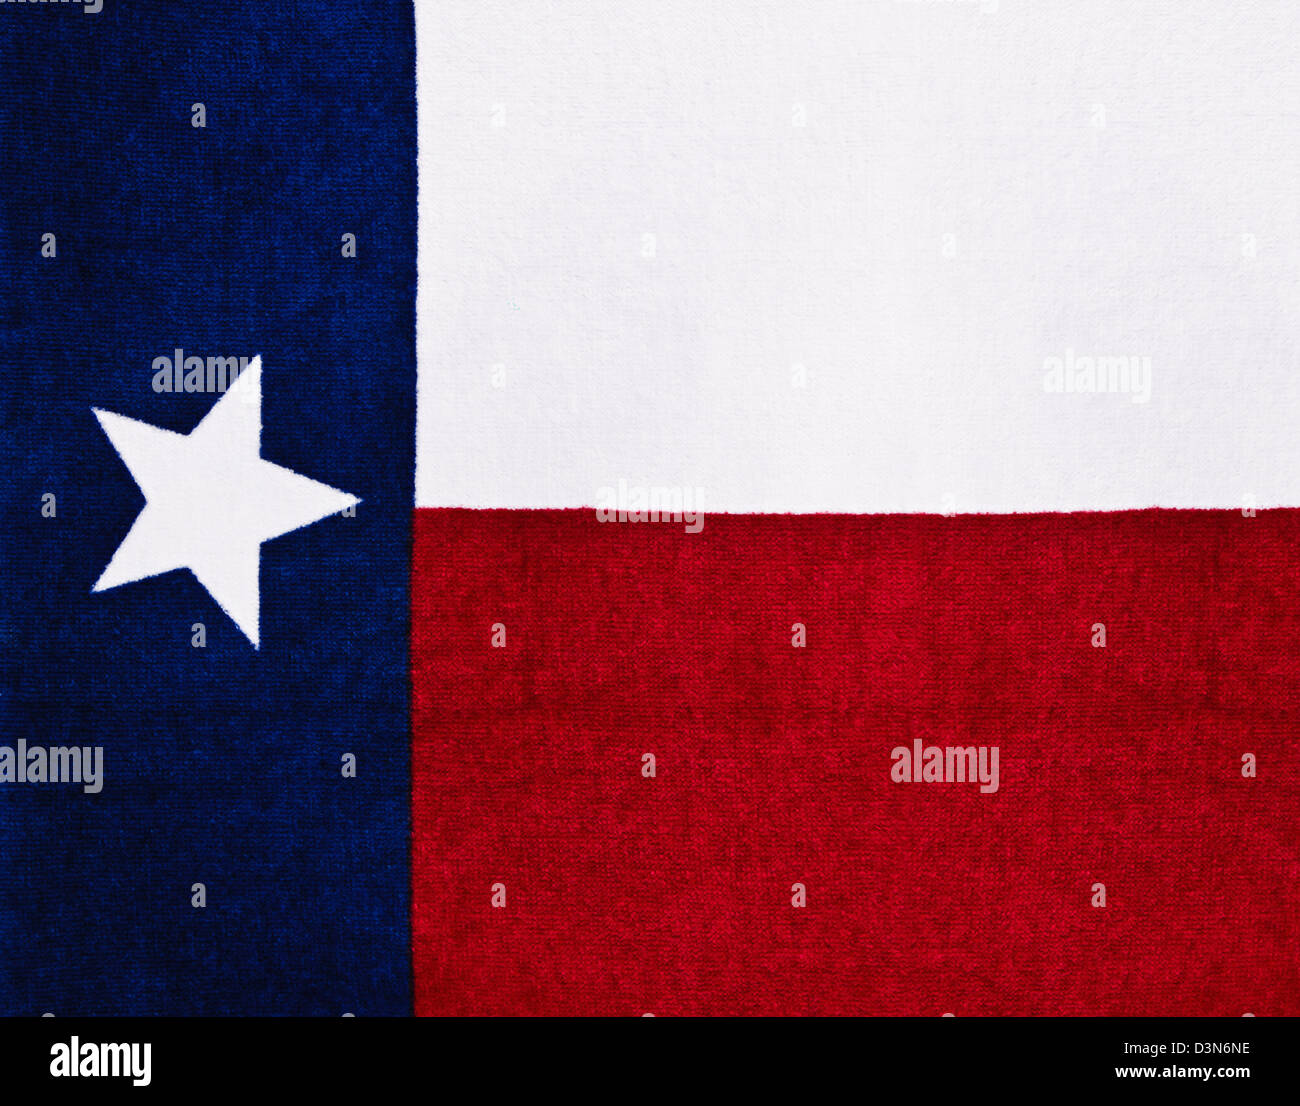 Drapeau de l'état du Texas sur tissu texturé Banque D'Images